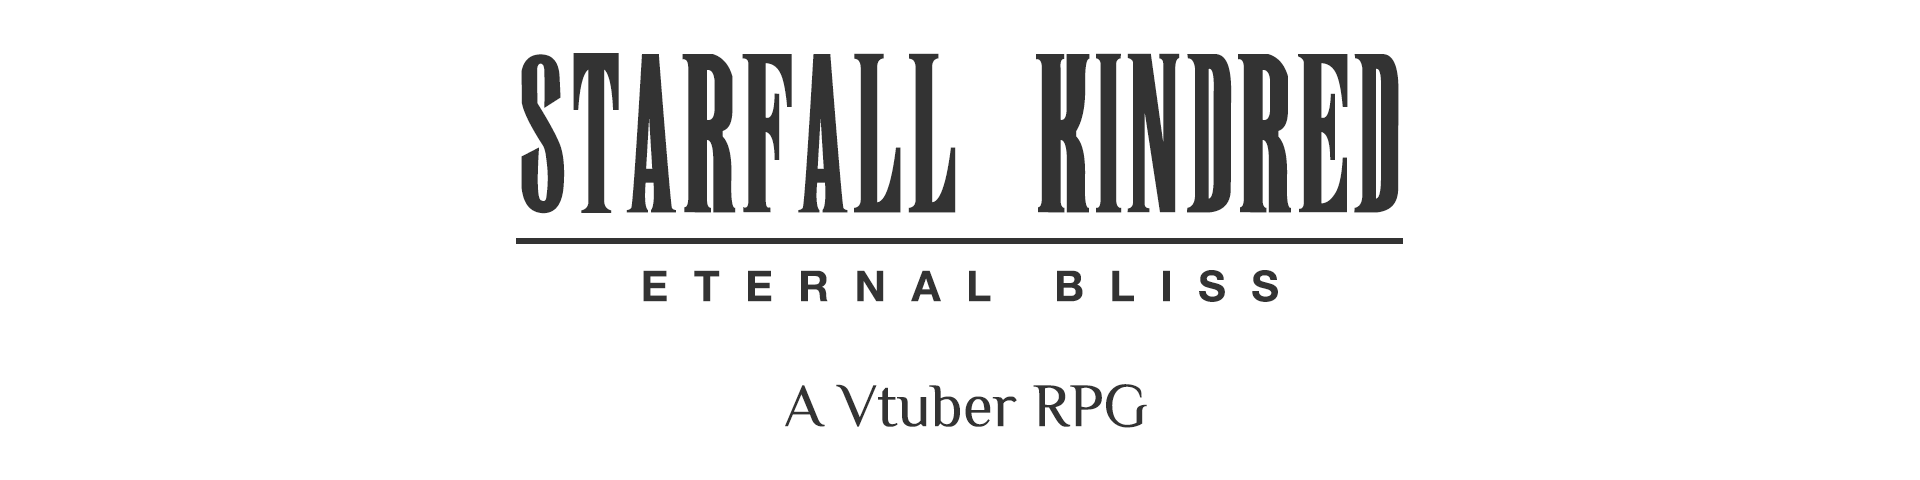 Starfall Kindred - Eternal Bliss